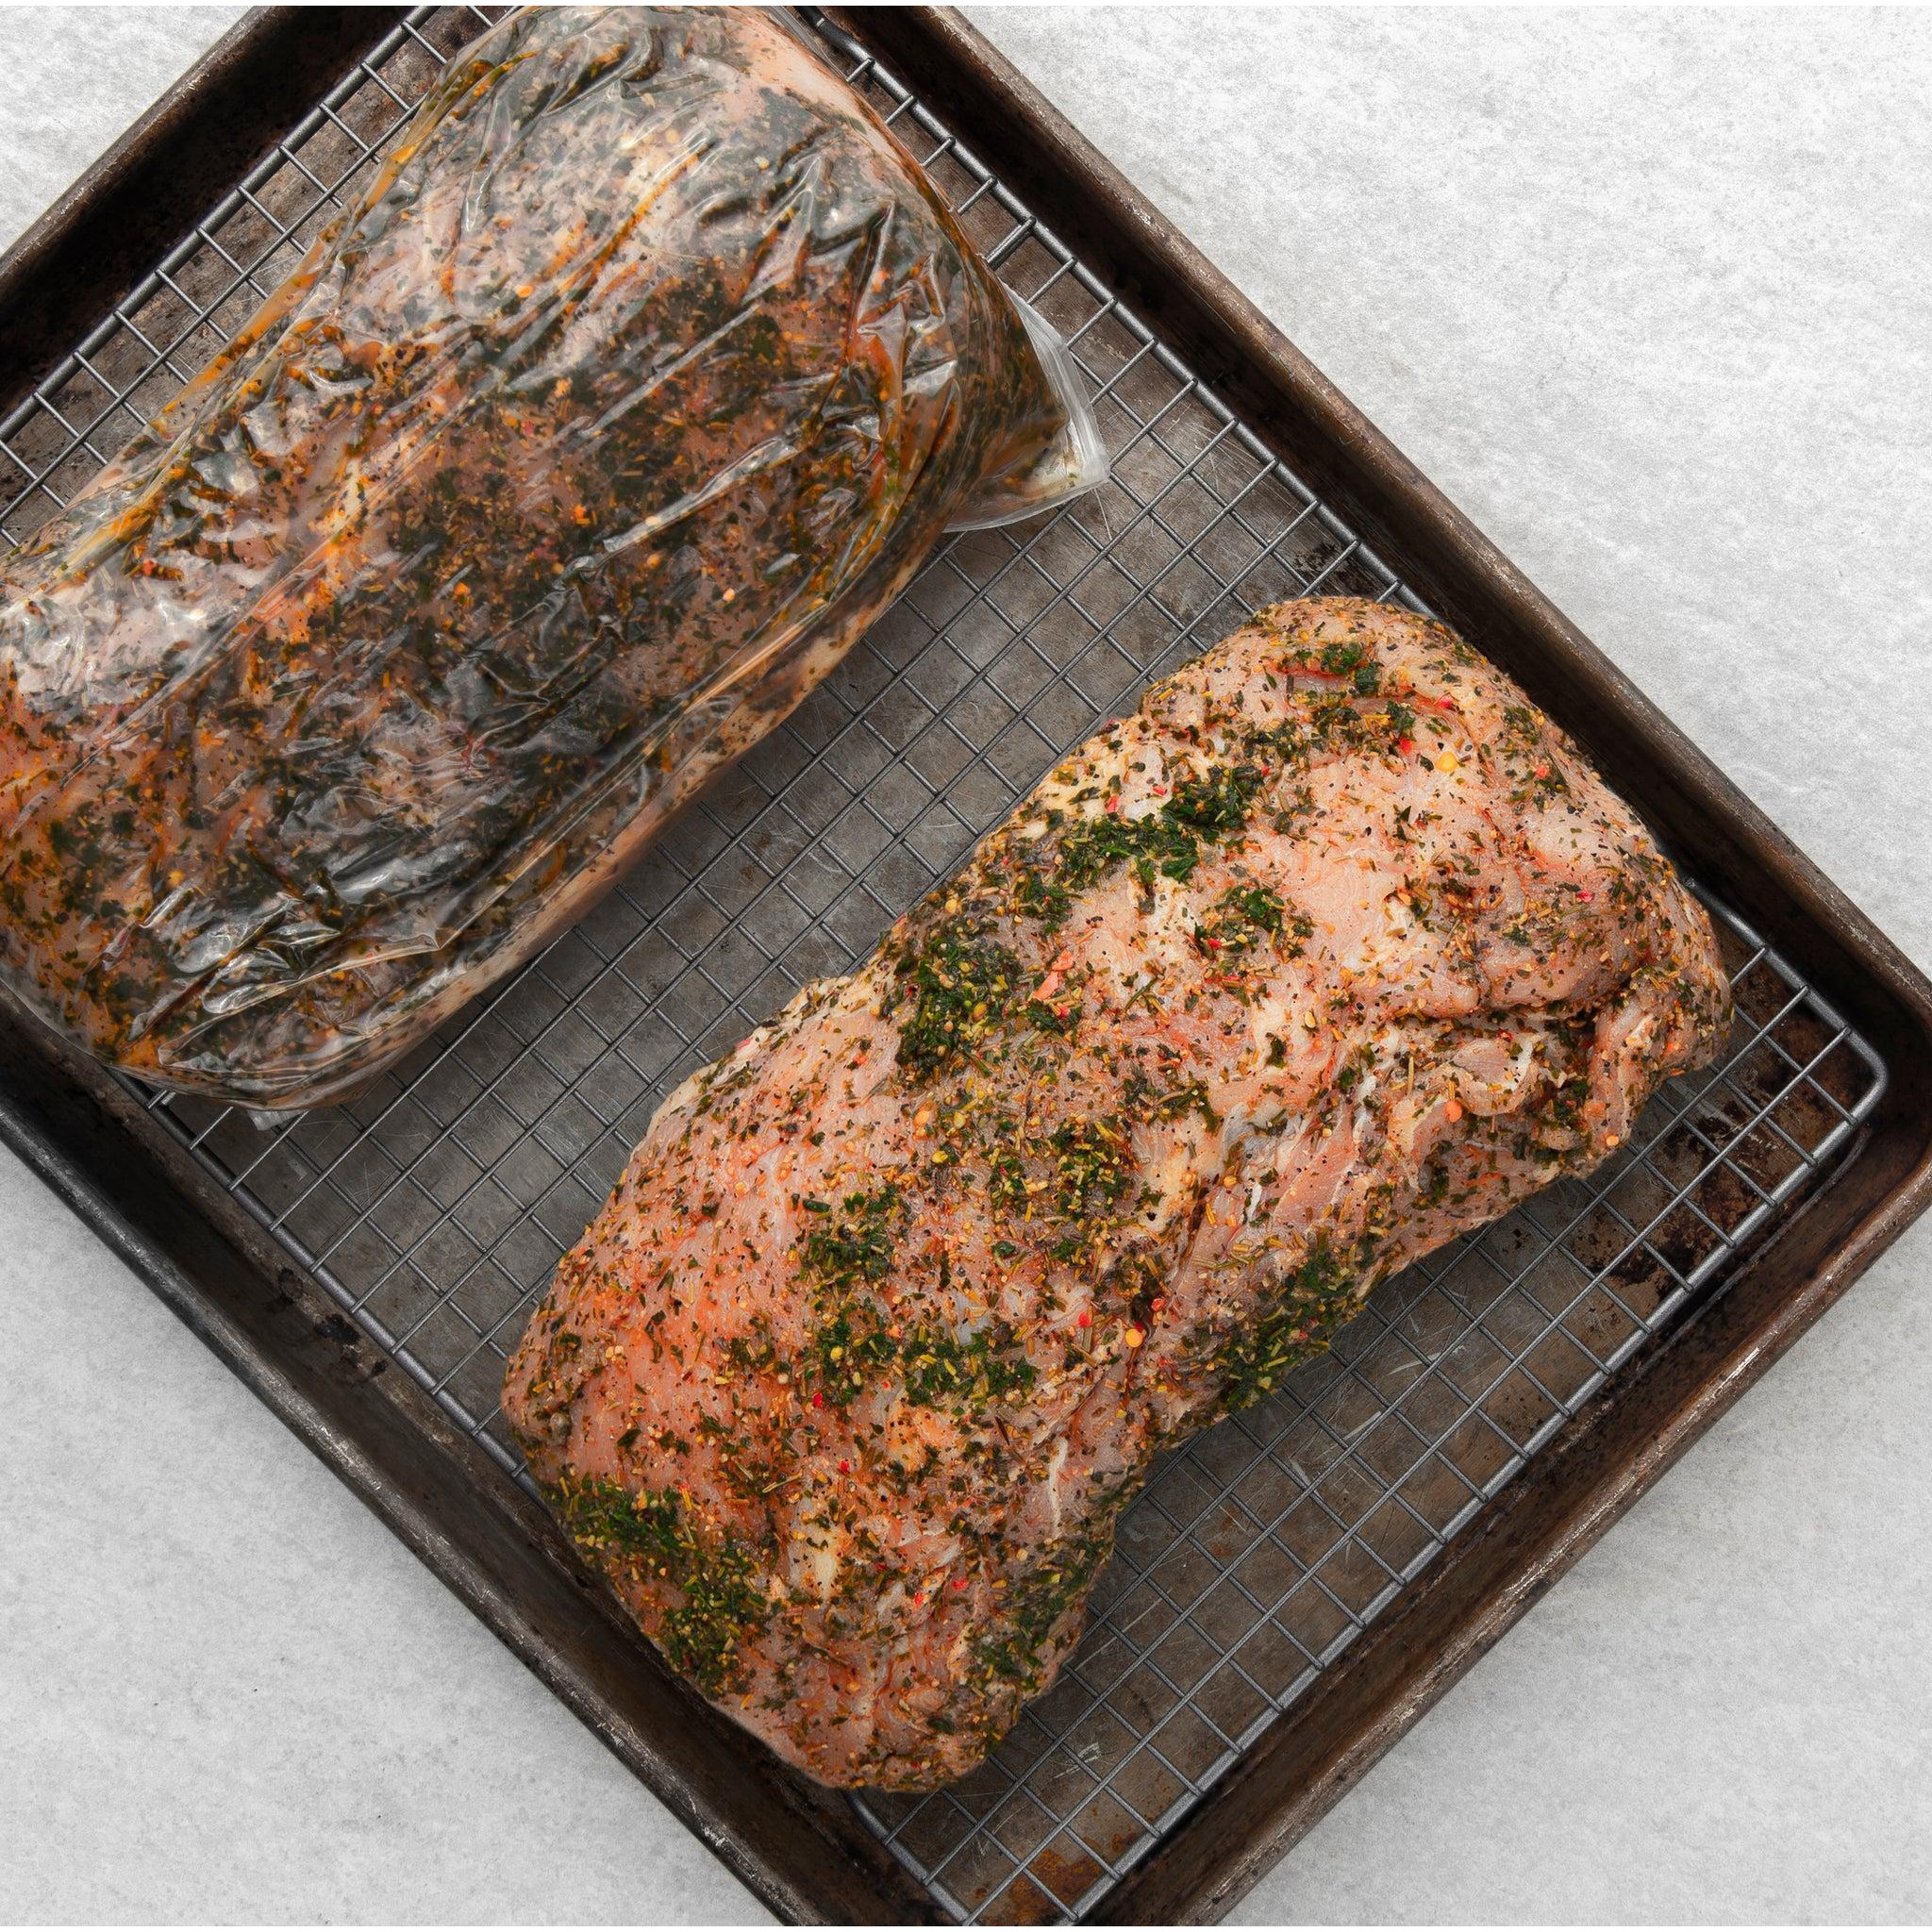 Rastelli's Antibiotic Free Pork Roast in a Cooking Bag